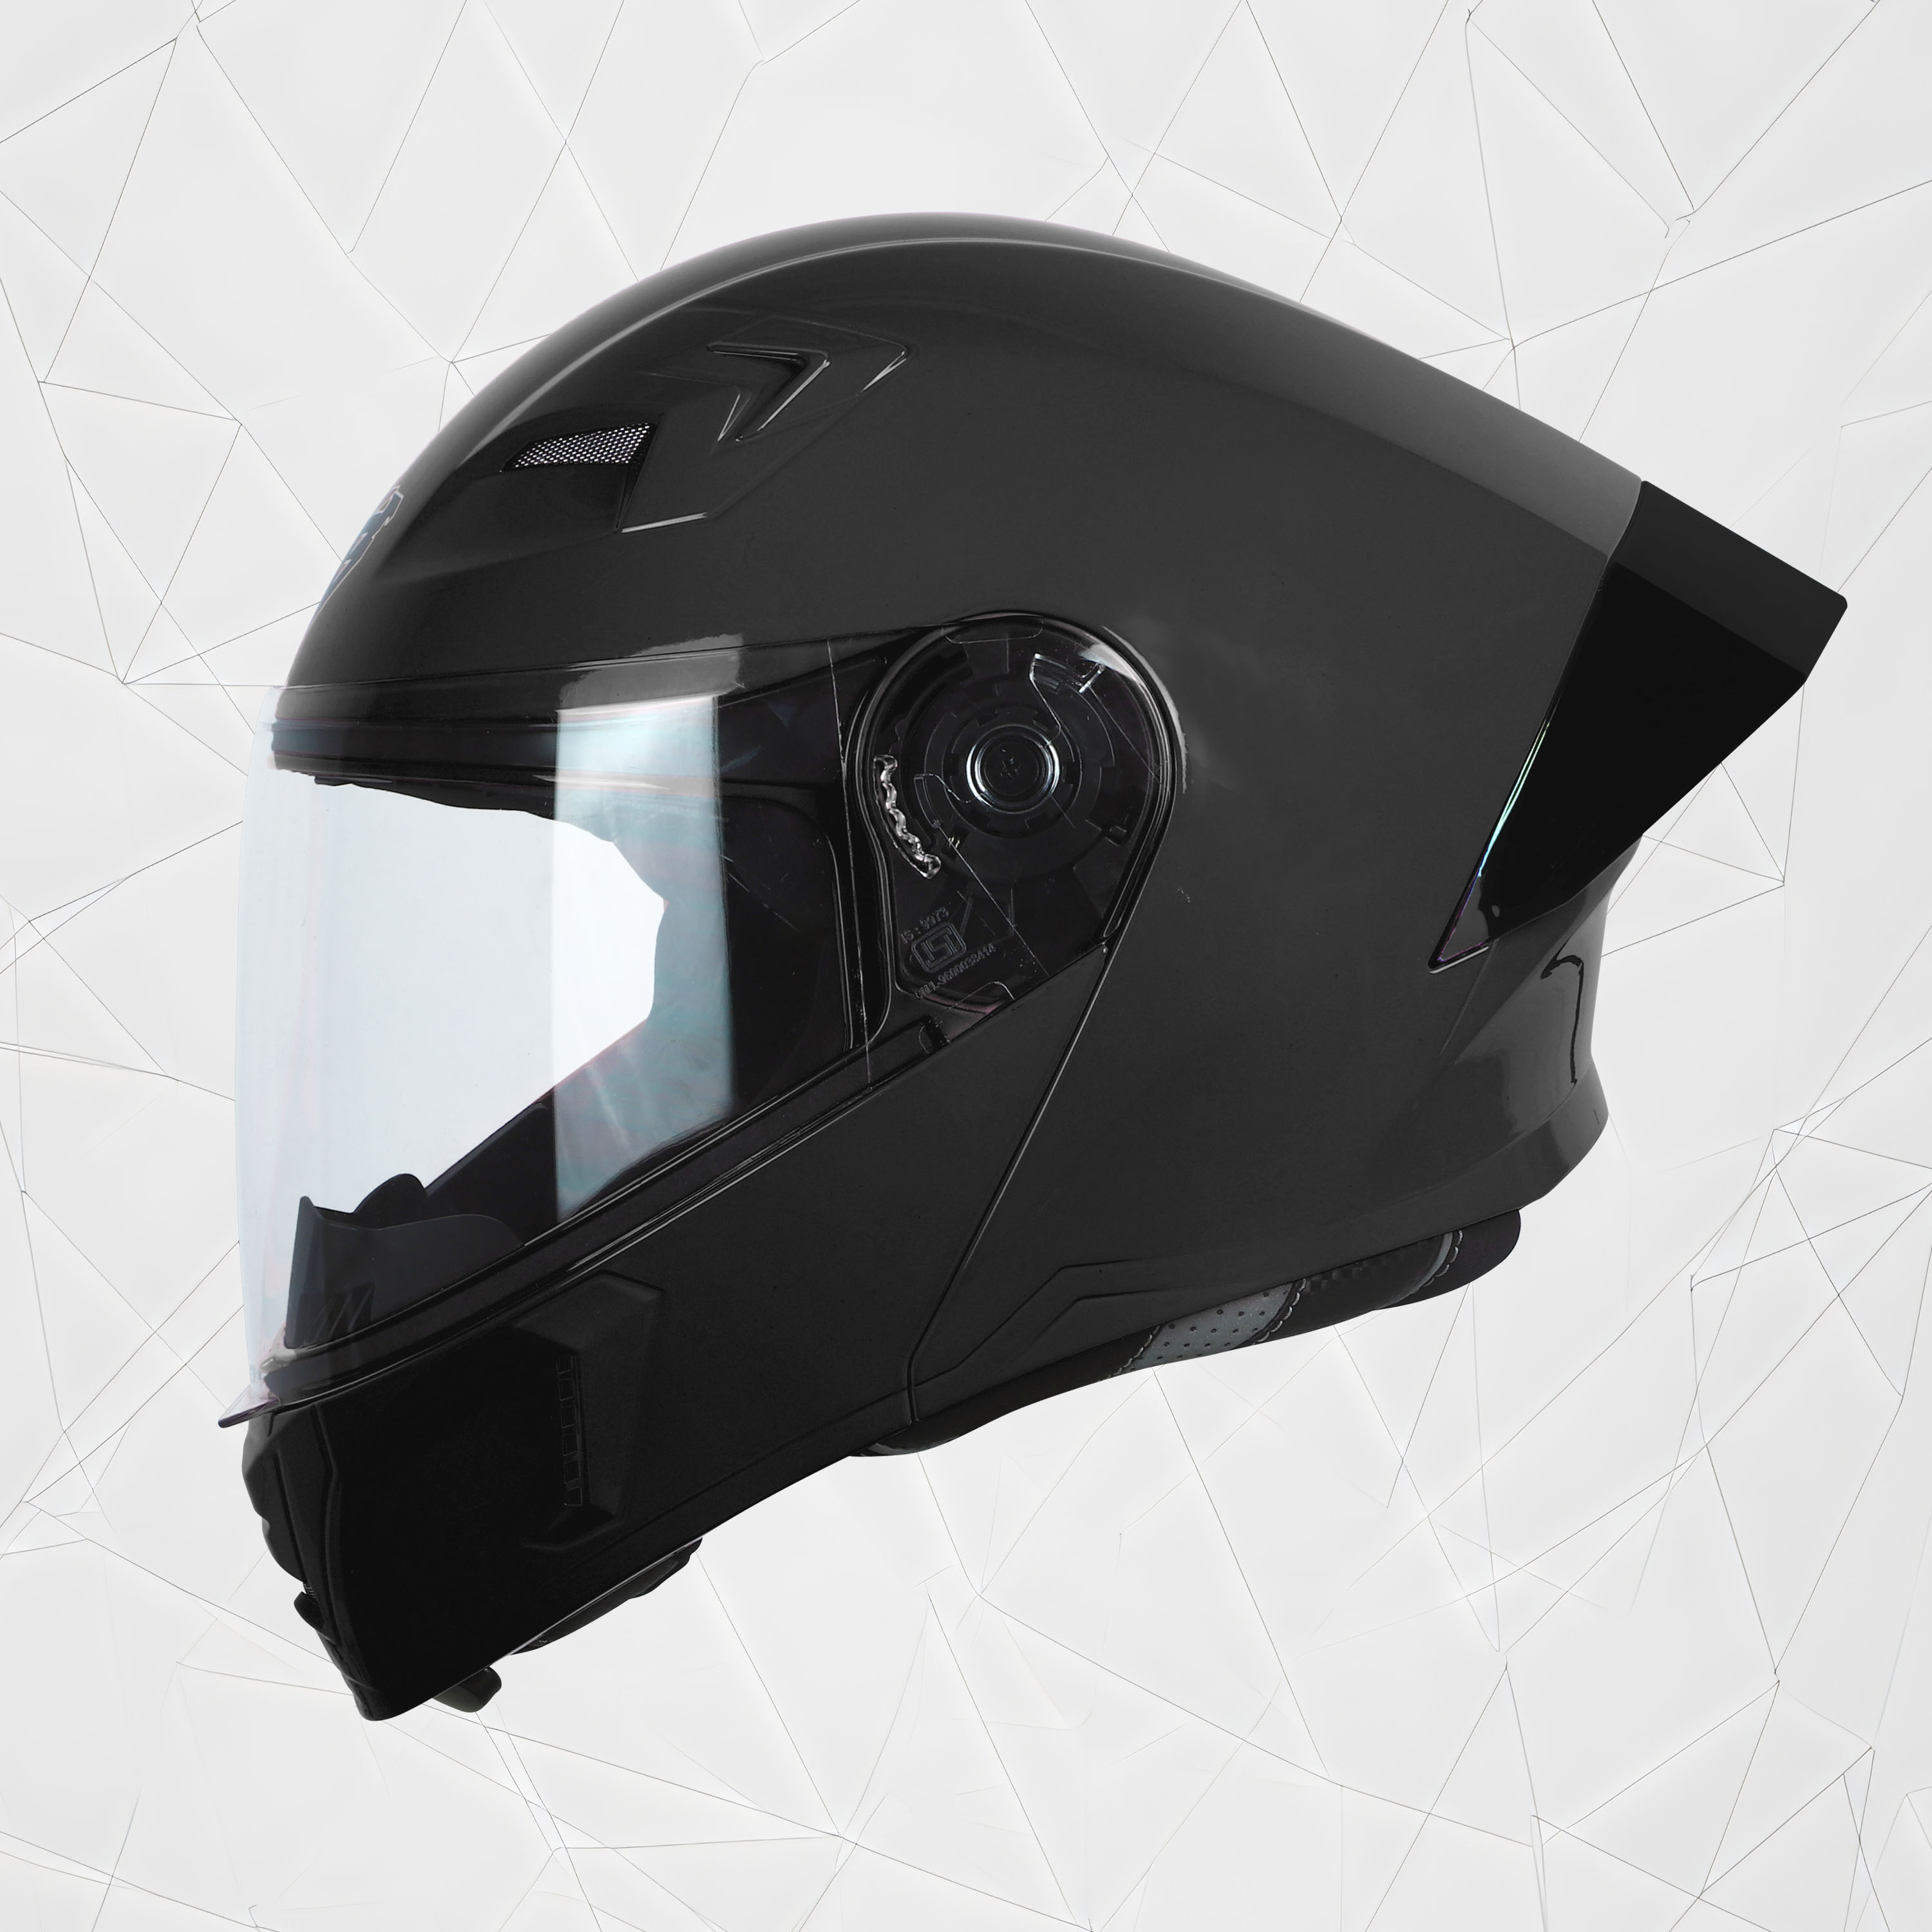 Steelbird SBA-20 7Wings ISI Certified Flip-Up Helmet With Black Spoiler For Men And Women (Matt Black With Clear Visor)